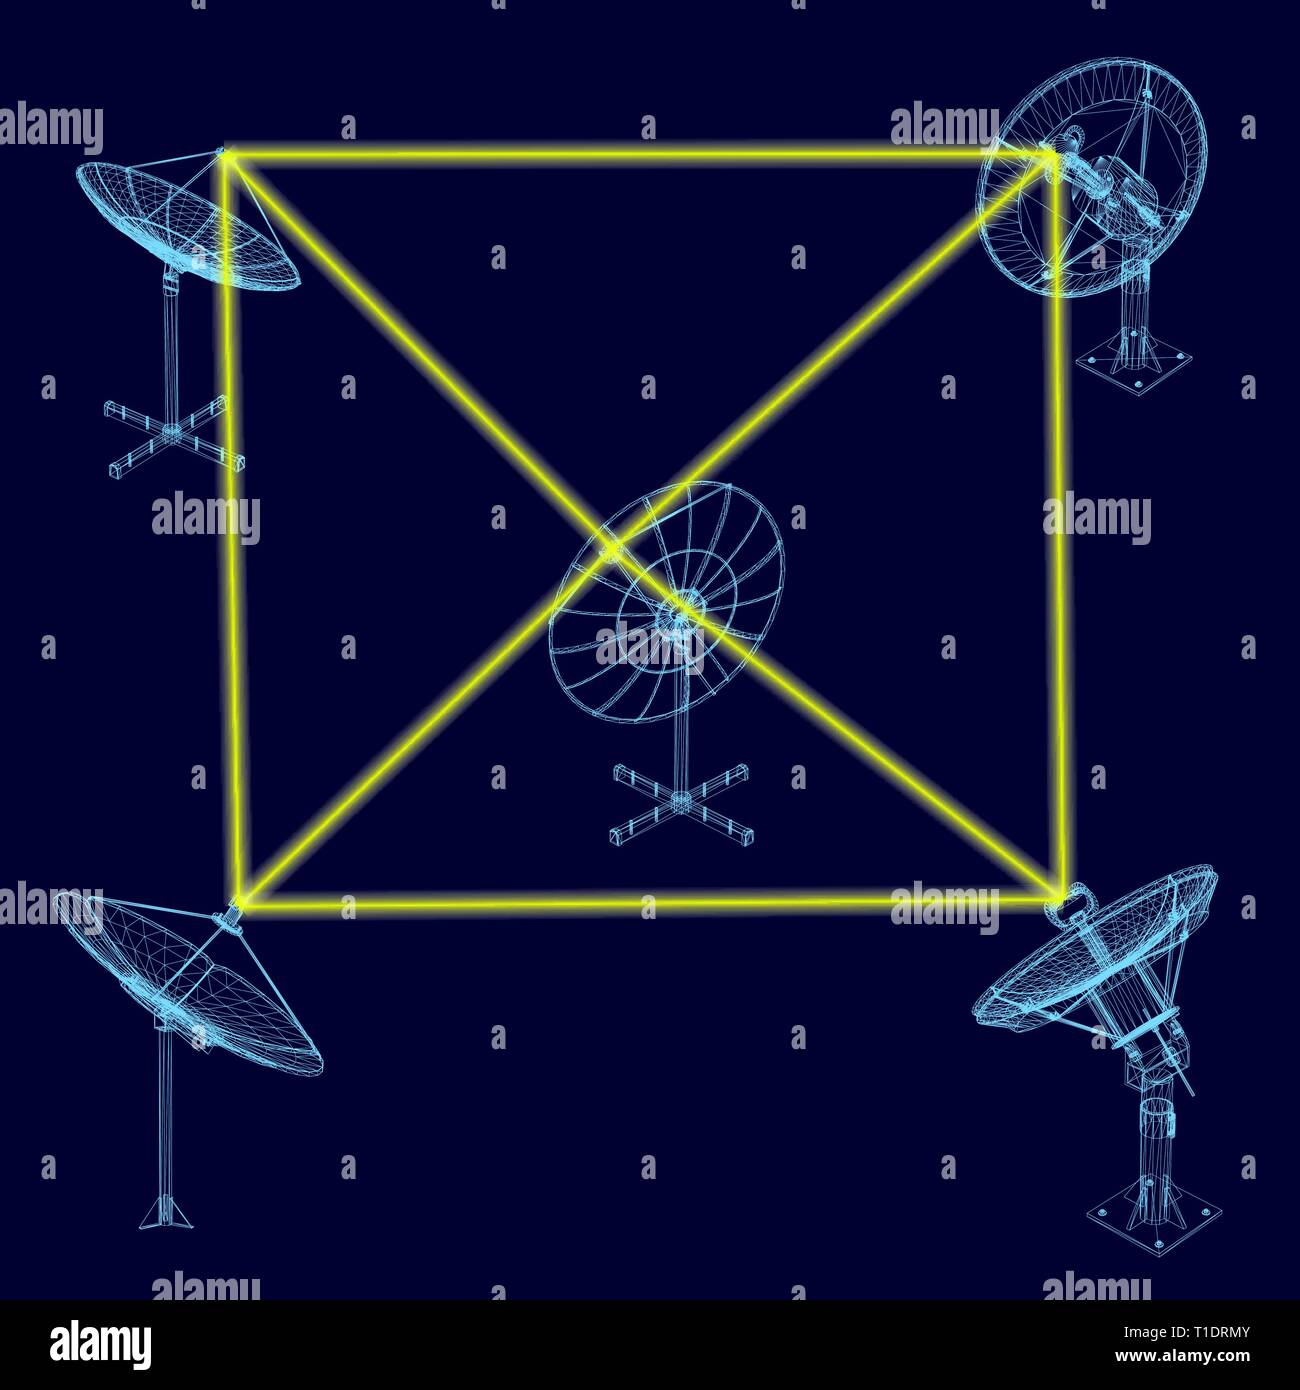 Hintergrund mit Satellitenschüsseln, die Signale untereinander. Drahtmodell Satellitenschüsseln. Vector Illustration Stock Vektor